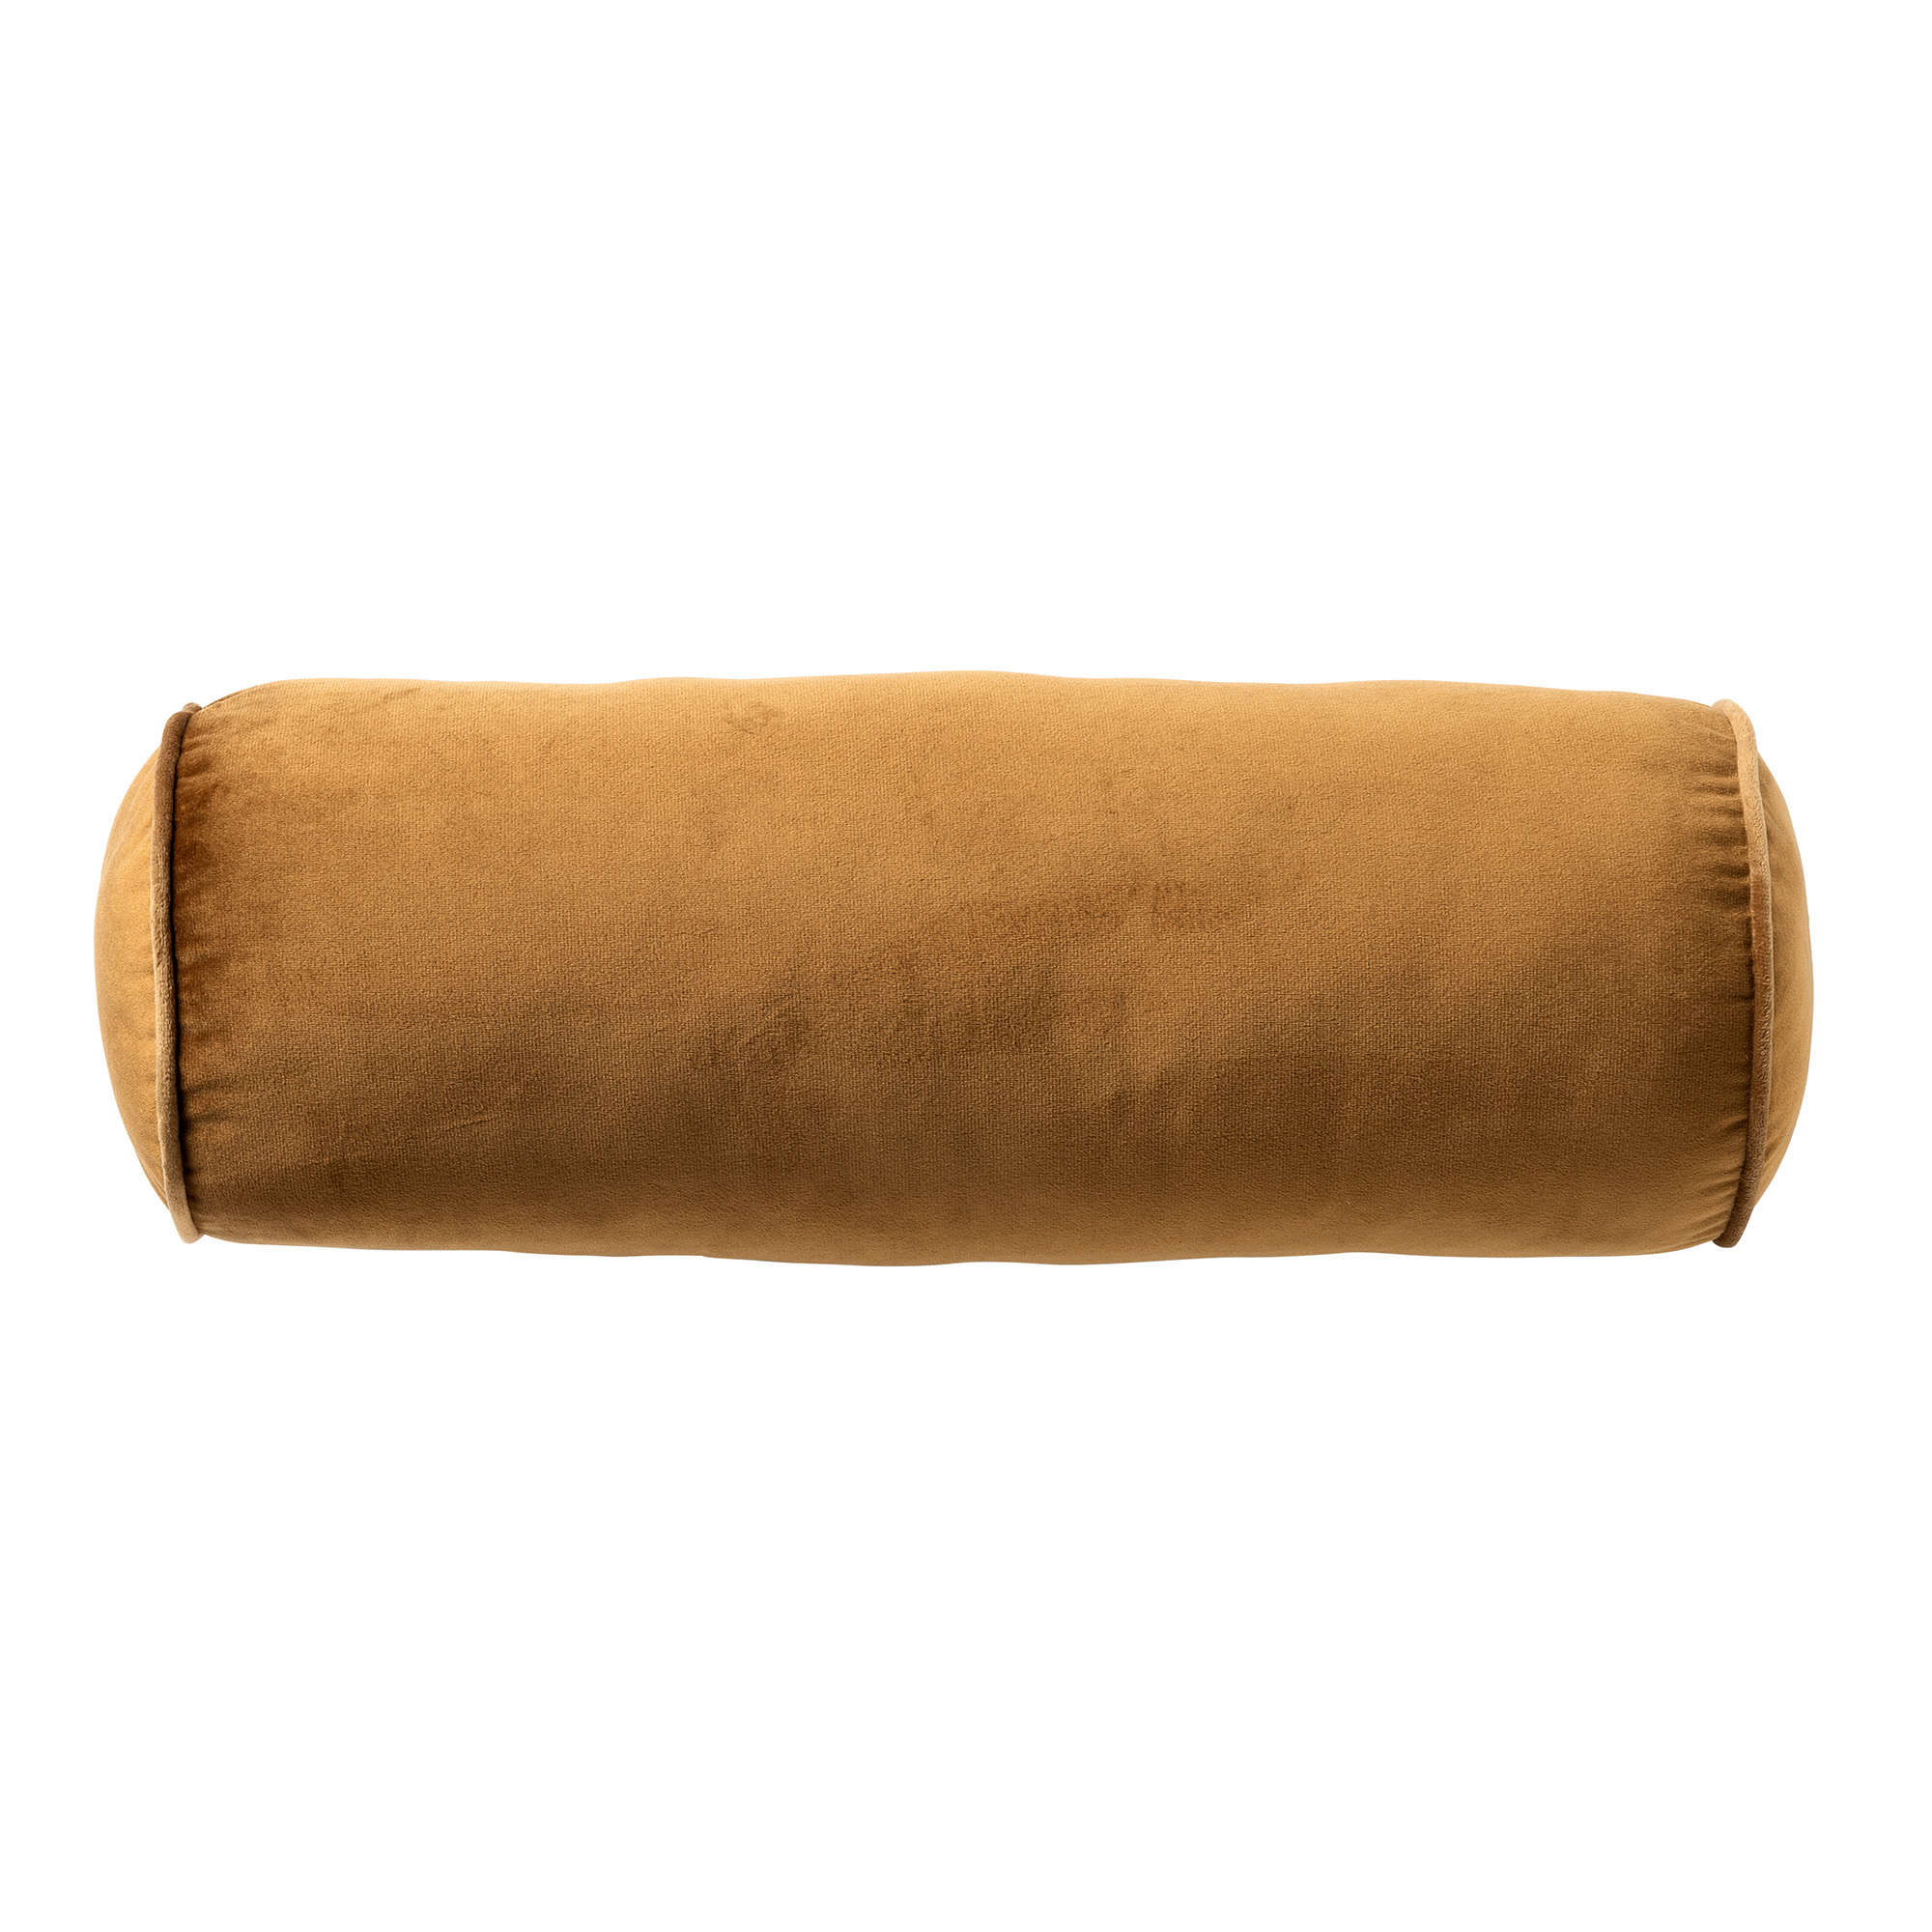 FALCO - Rolkussen 18x50 cm - Tobacco Brown - bruin